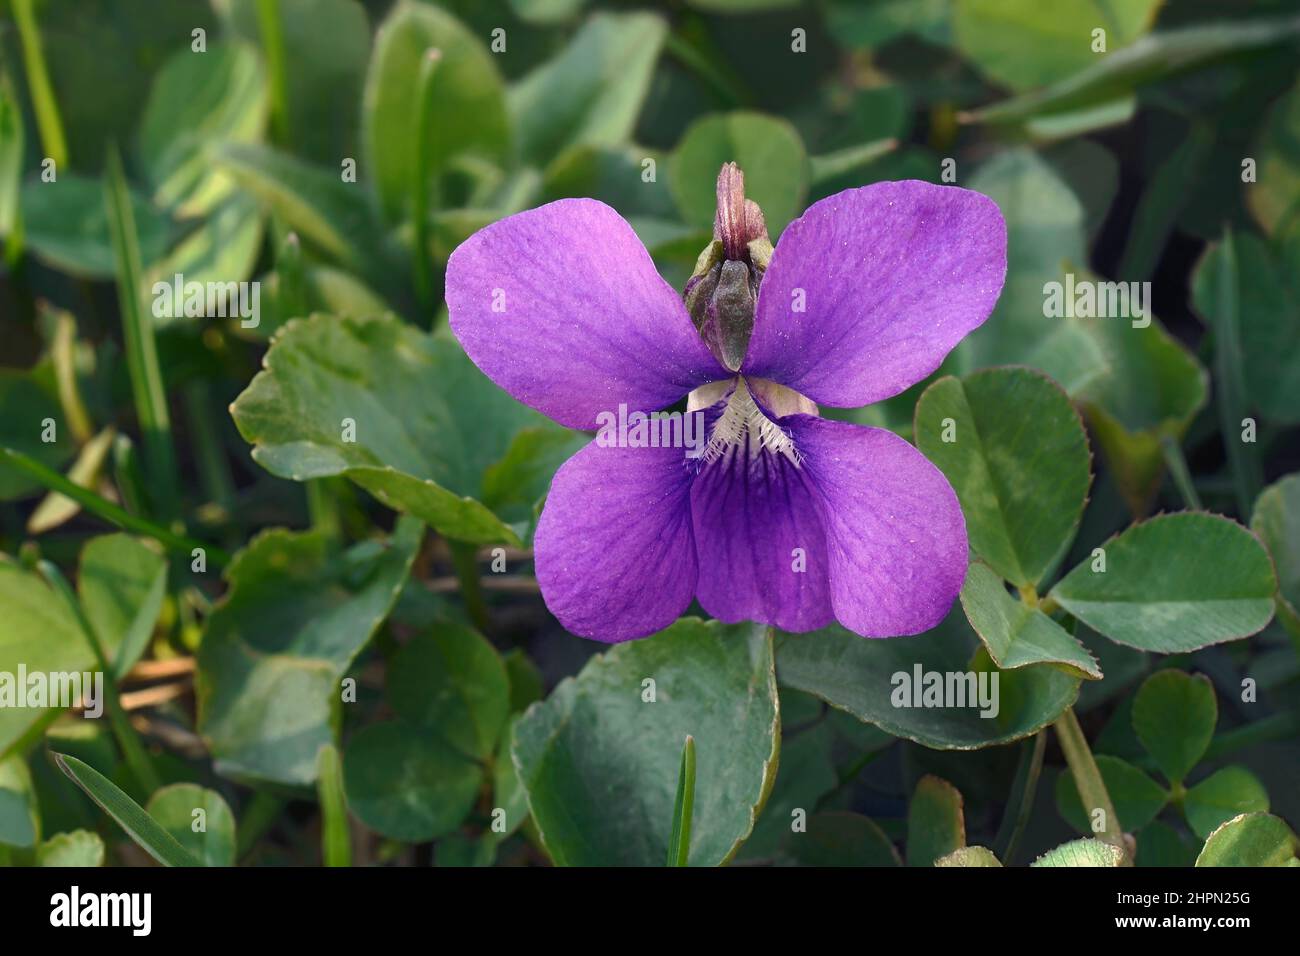 Violet bleu commun (Viola sororia). Appelé violet de prairie commun, violet violet violet, violet de bleu de Wooly, violet à capuchon, violet de Missouri et violet de bois Banque D'Images